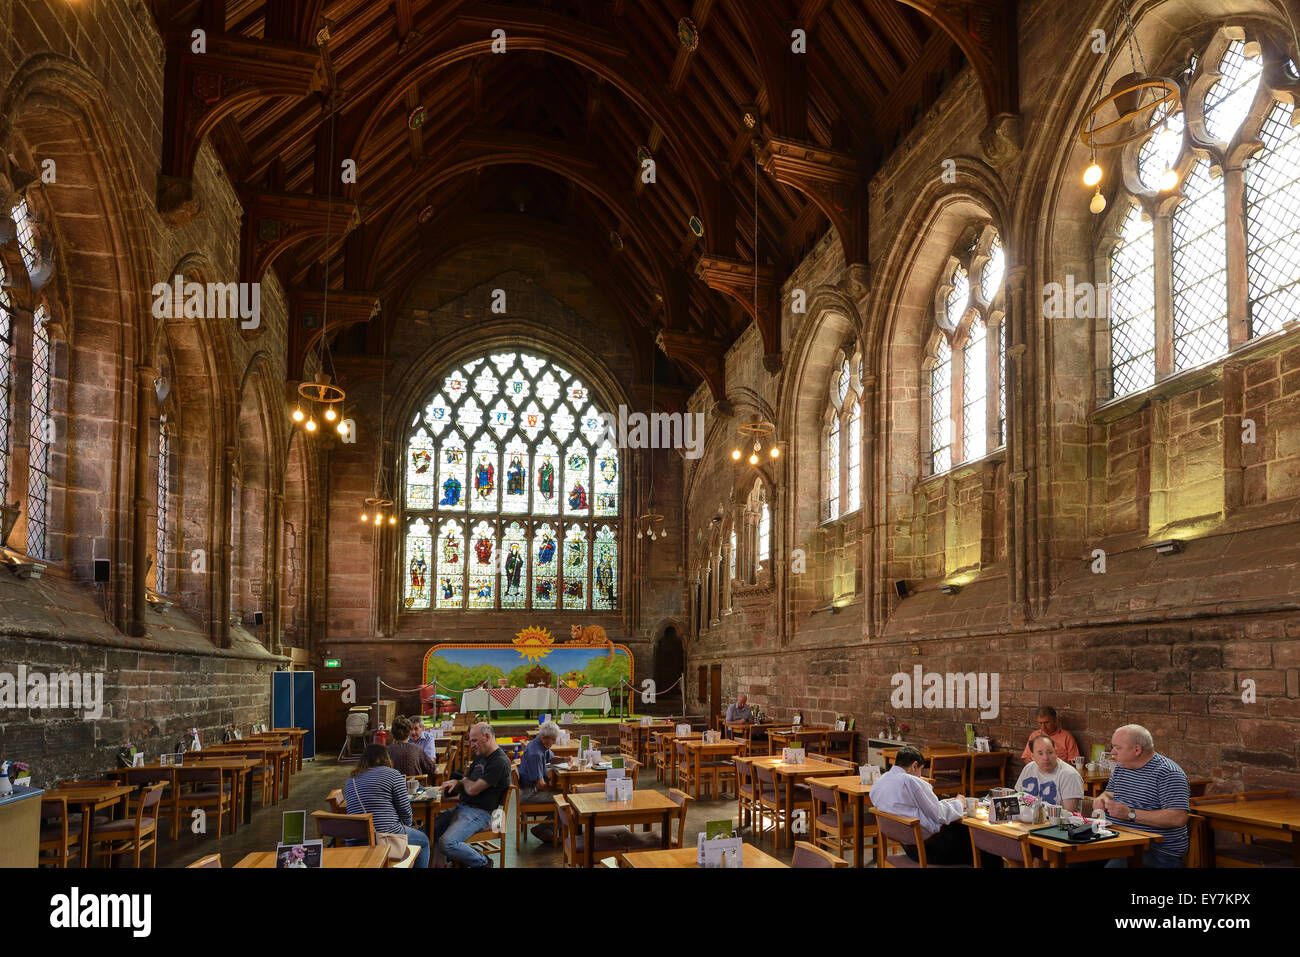 El interior del refectorio en el interior de la Catedral de Chester UK Foto de stock